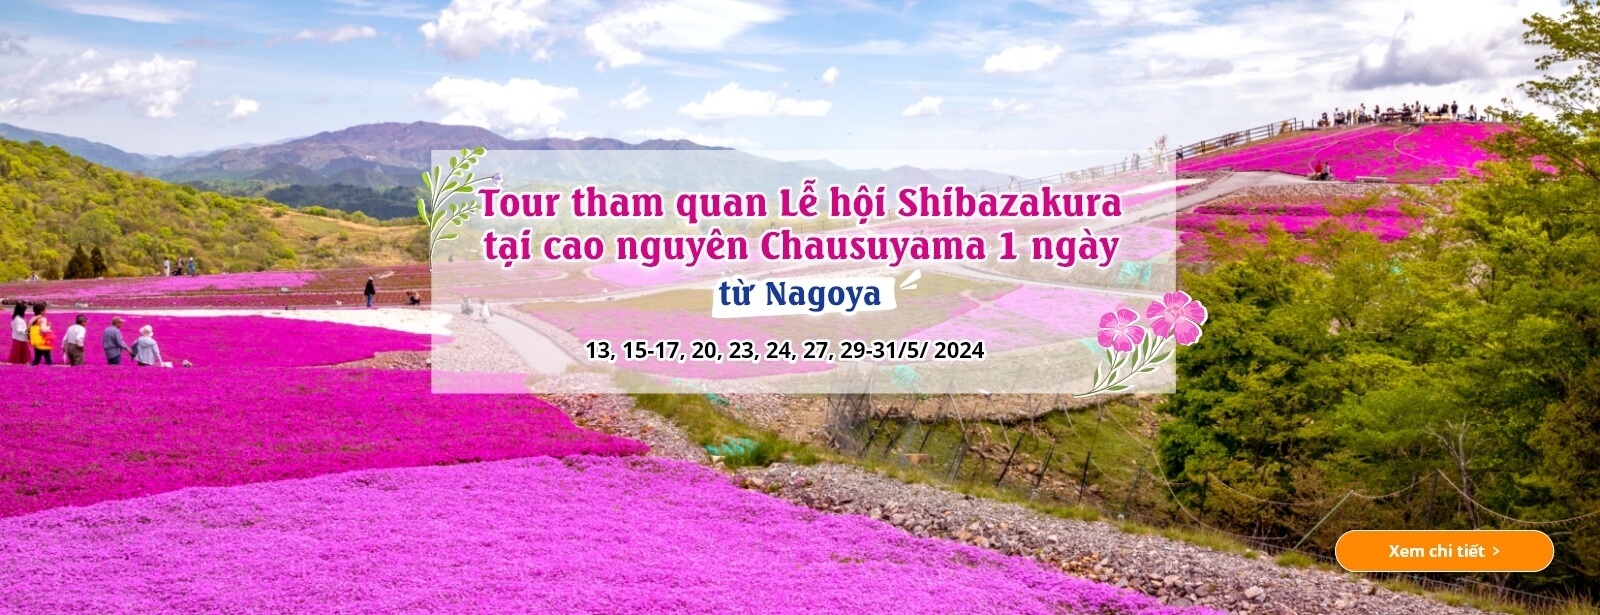 Tour tham quan Lễ hội Shibazakura tại cao nguyên Chausuyama 1 ngày từ Nagoya